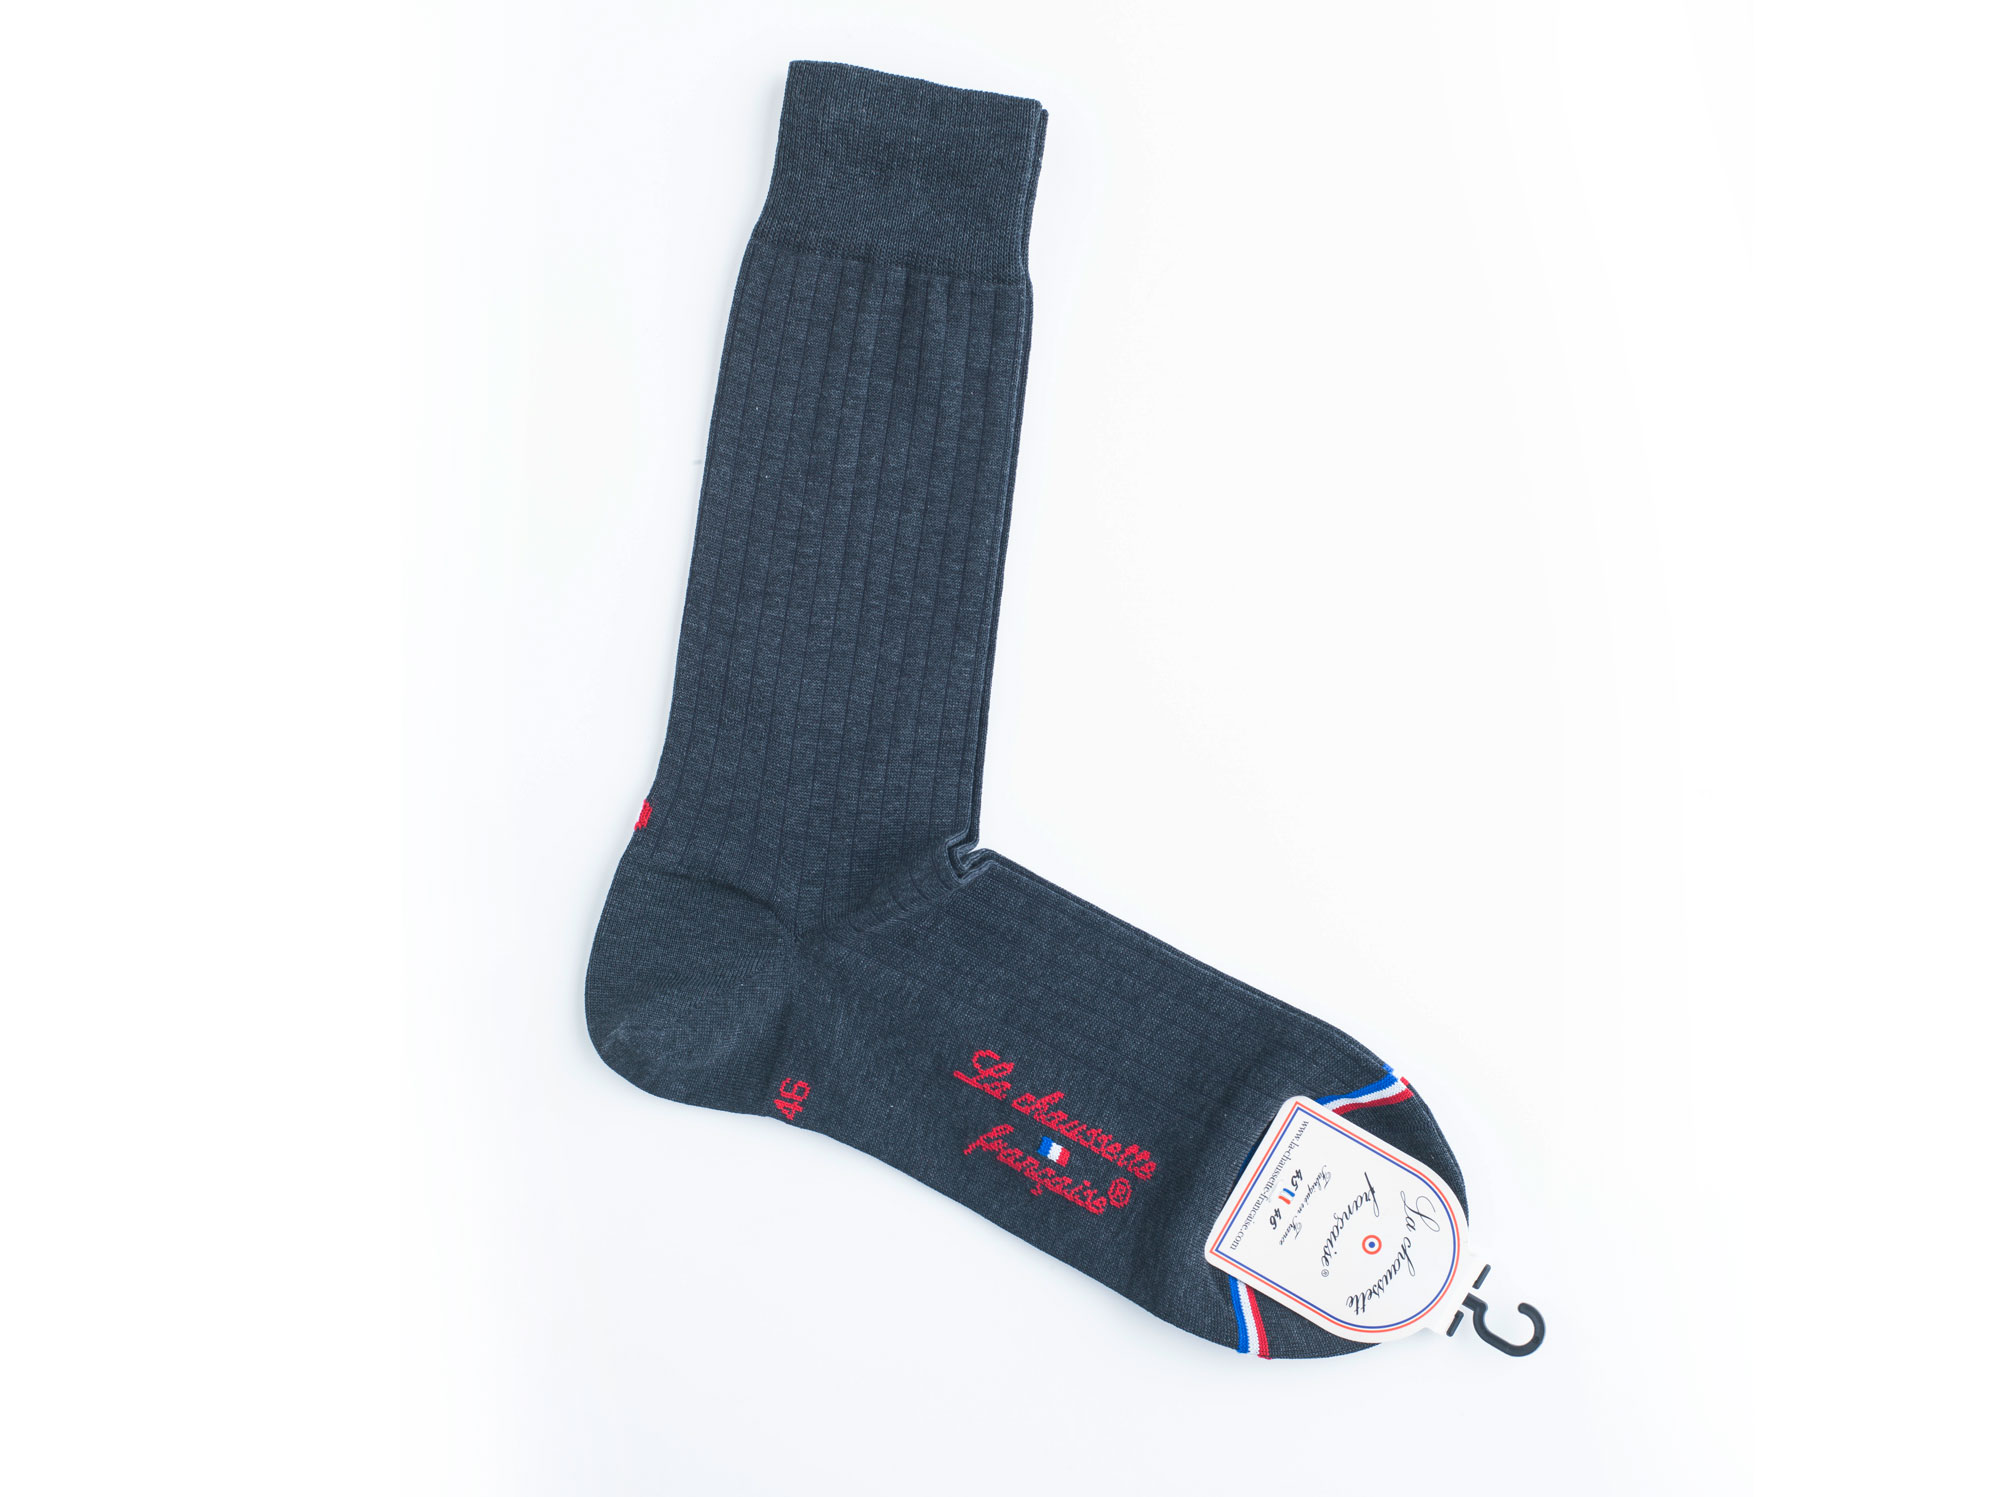 Socks La chaussette francaise